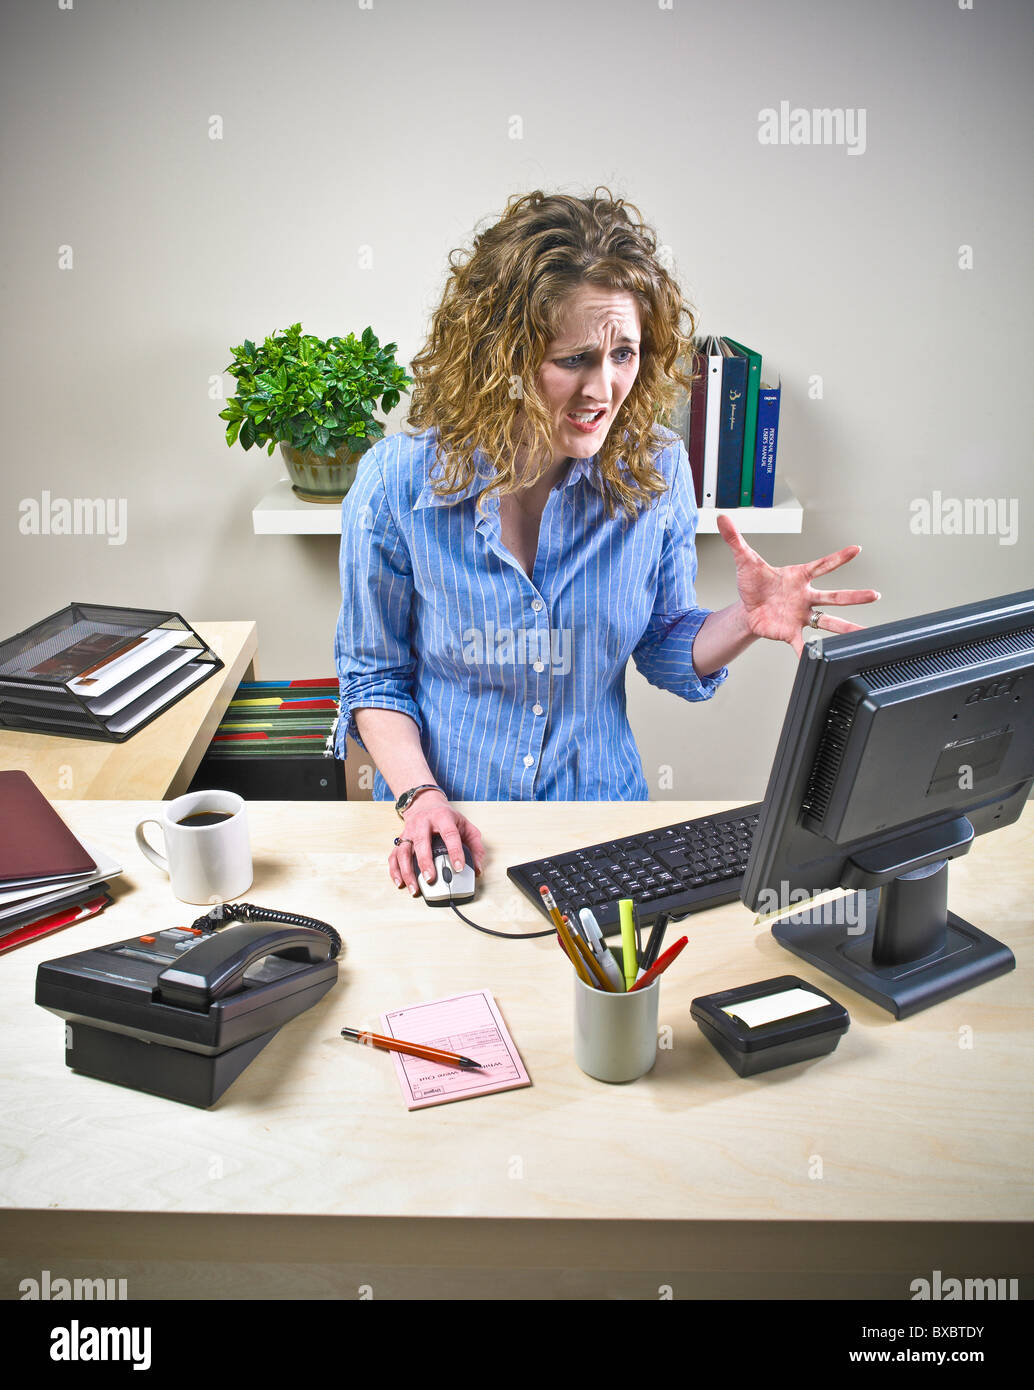 Weibliche Sekretärin, executive, Büroangestellte am Computertisch. Stress-Situation. Unorganisiert. Stockfoto